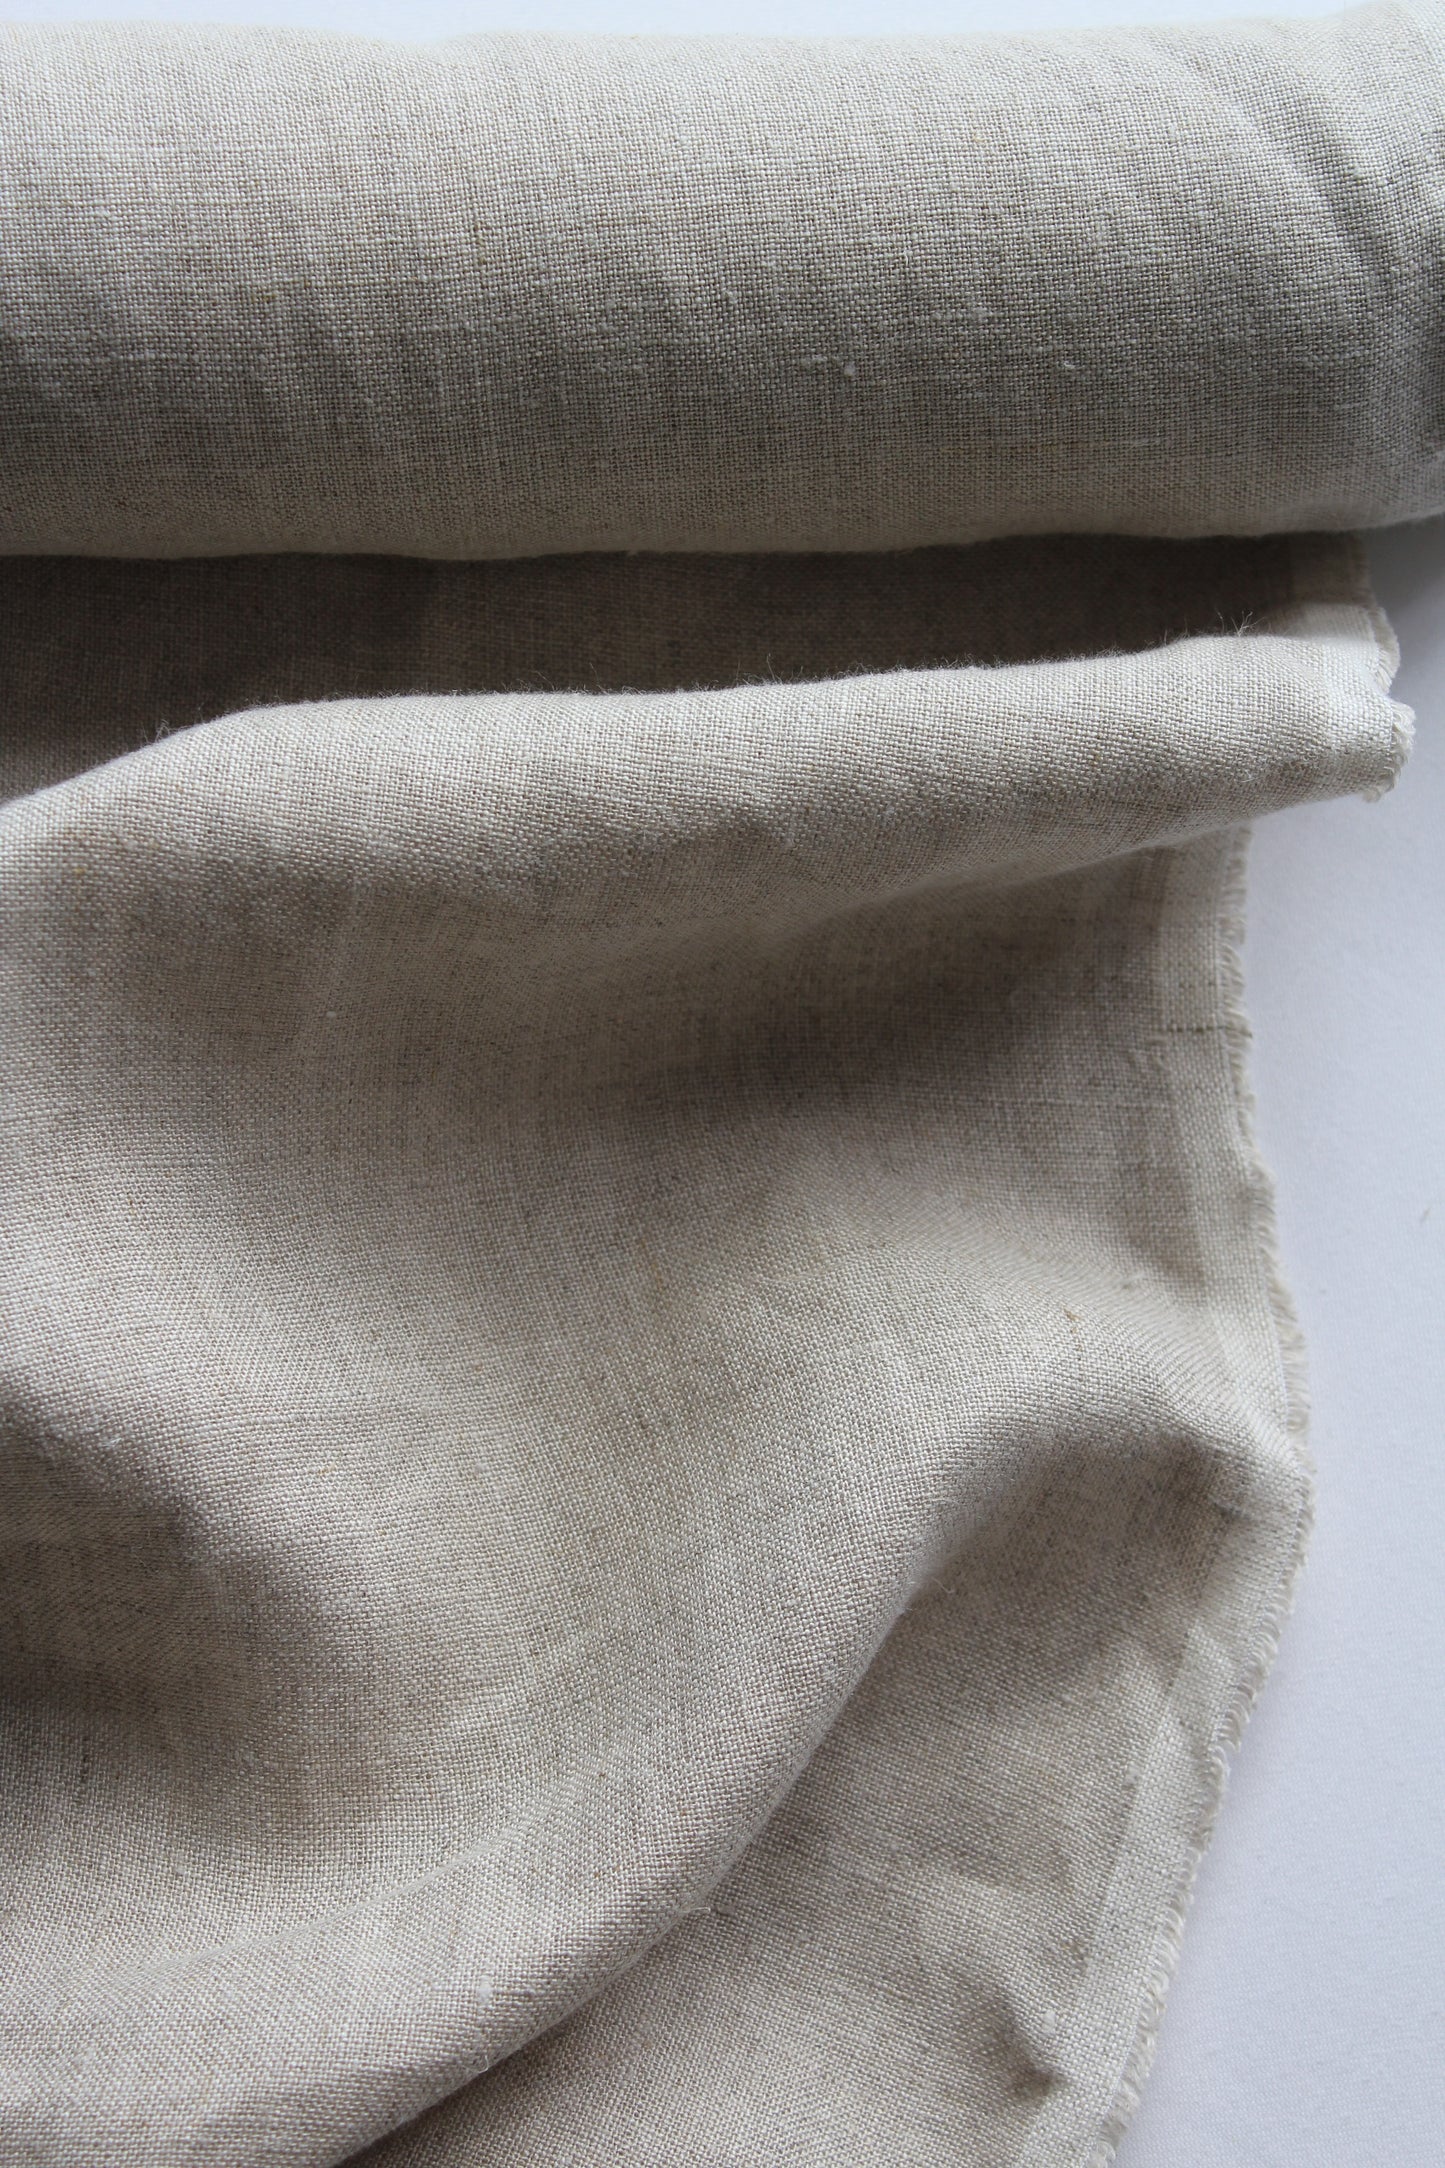 pure natural flax linen sand beige plain texture medium weight fabric